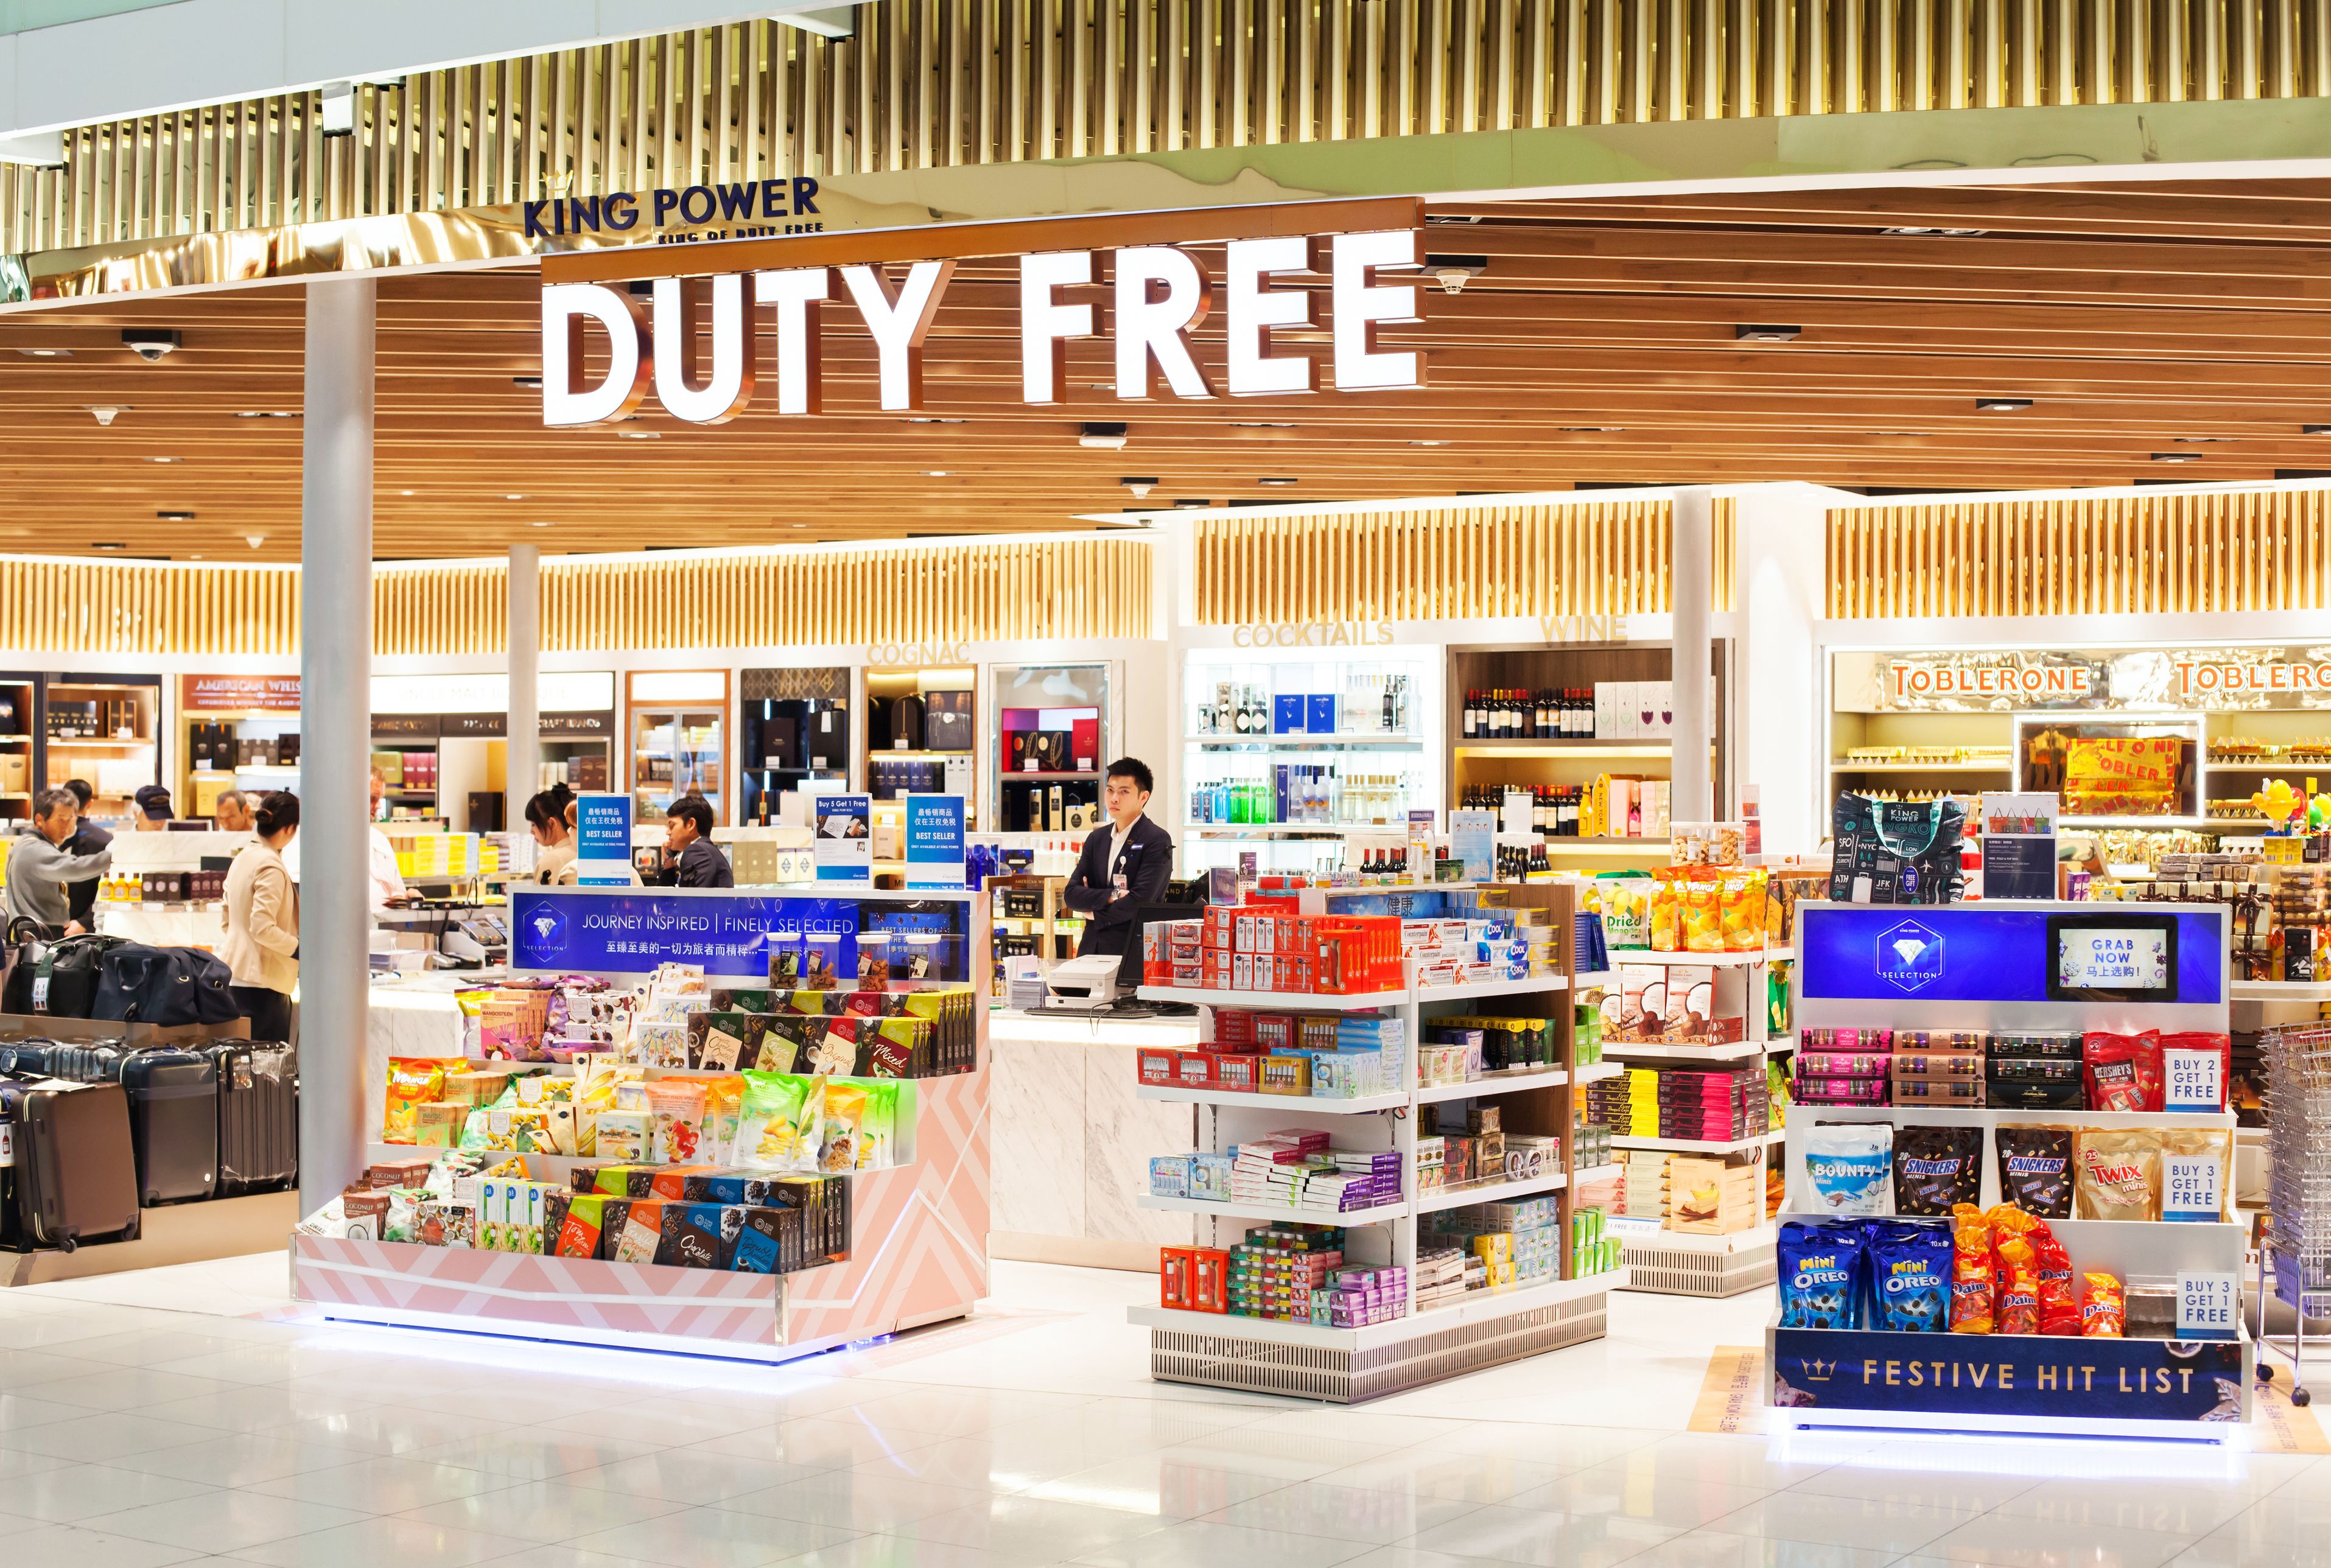 Duty free vs магазин: выгодно ли покупать в дьюти фри в аэропорту